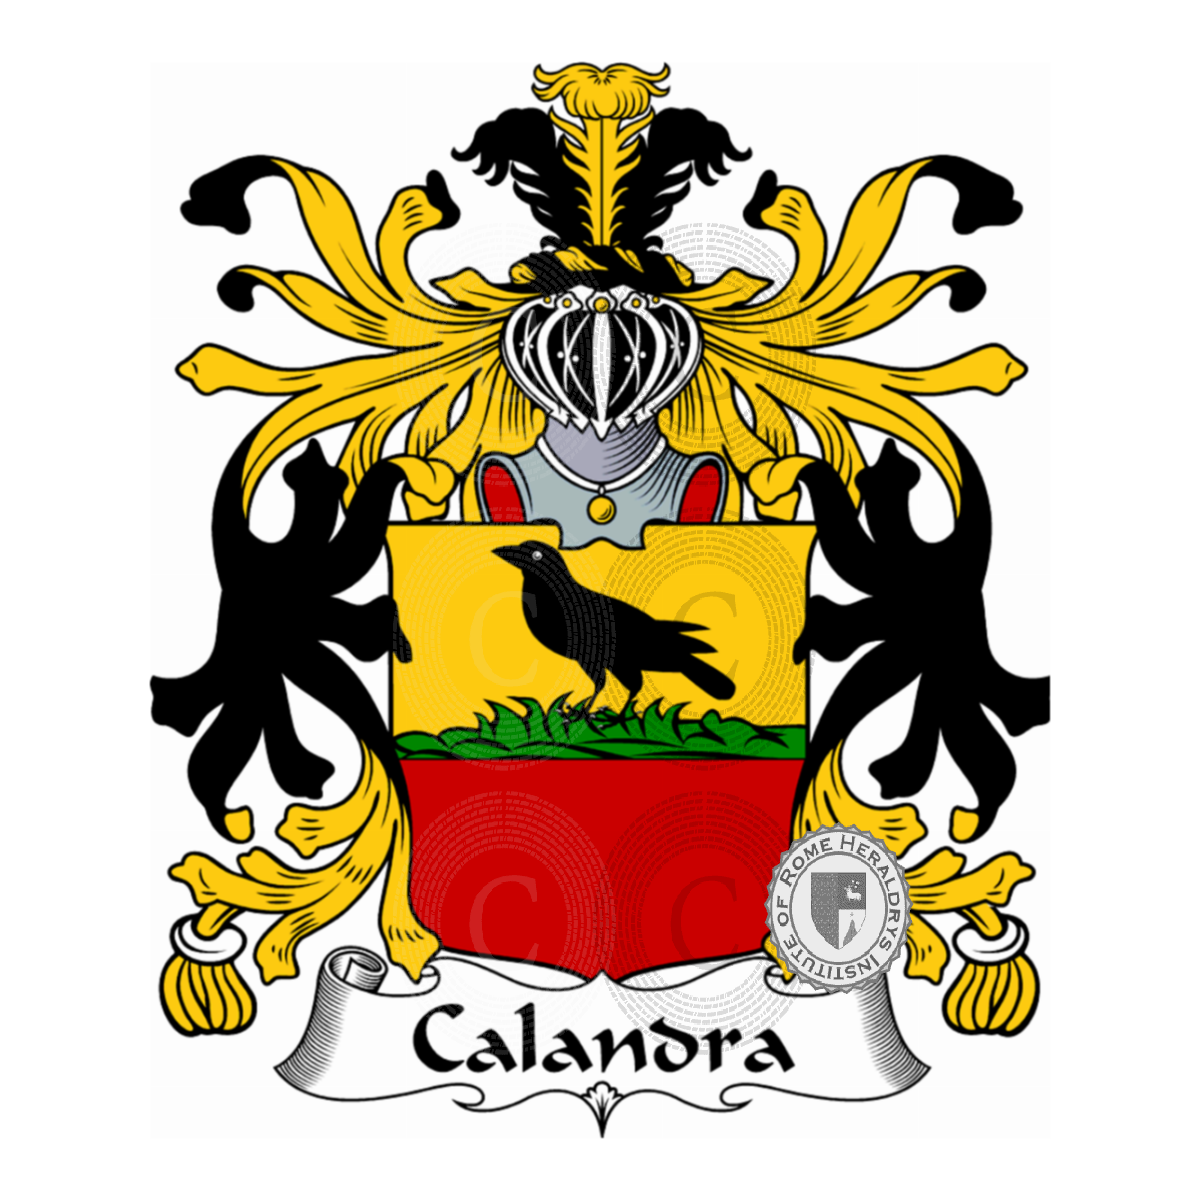 Brasão da famíliaCalandra, Calandri,Callandra